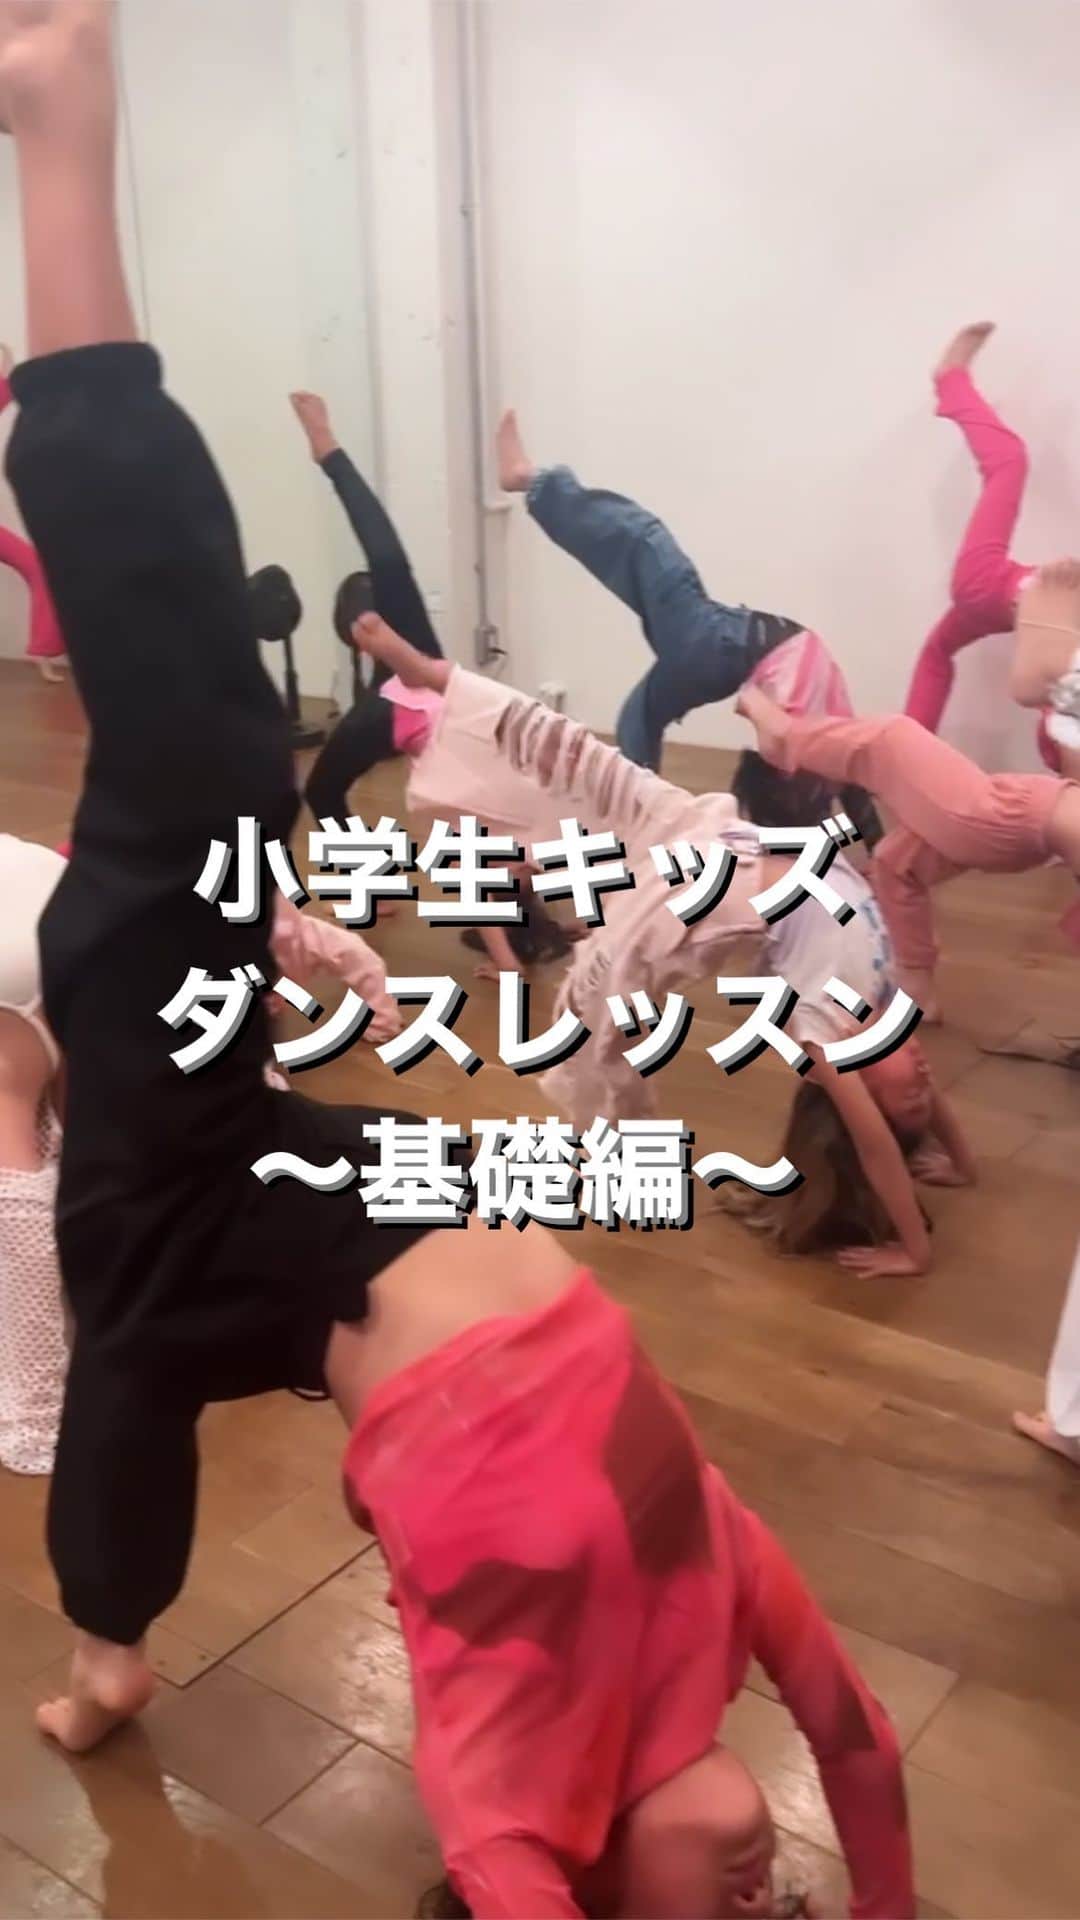 Nazukiのインスタグラム：「⭐️小学生キッズダンスレッスン⭐️ 〜前半基礎〜 na  ①集中イメージ瞑想🧘 集中力もつける為に、深い呼吸をしながら、 ダンスのイメージもしていく✨  ②体幹トレーニング🏋️ 筋肉がまだないので、ダンスに大切な筋肉をつけていく💪  ③柔軟ストレッチ🦵 子供の頃の柔らかさが大事 普通のストレッチだけではなく、深めていきます👏  ④キレの練習‼️ ダンスに欠かせないキレを練習 体幹鍛えながらスピード感をつけていきます👍  Nazuki先生のレッスンは、基礎や心持ちを大切にしています💛  次回レッスンは 12/23‼️  ご予約はDMでも受け付けてます😌  #nazuki #nazuki塾 #dance #dancer #kidsdance #dancelesson #キッズダンス　#ダンスレッスン #2歳から発育ダンス　#発育ダンス　#心とダンス #心得　#基礎ダンス　#体幹トレーニング #柔軟性 #瞑想　#子供瞑想　#meditation」